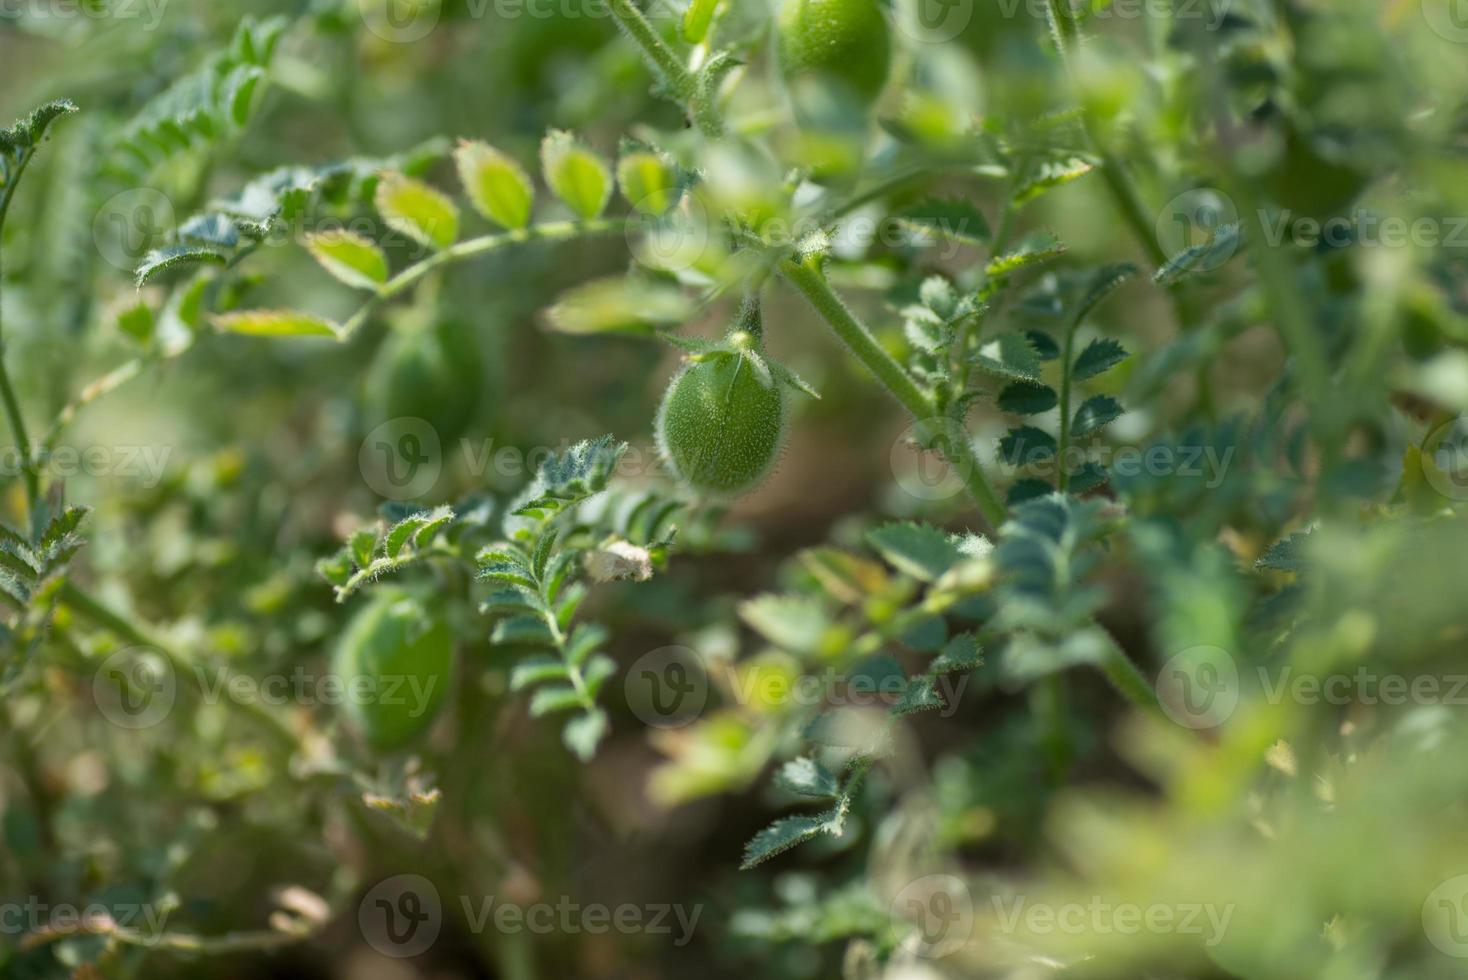 gousse de pois chiches avec de jeunes plantes vertes dans le domaine agricole, gros plan. photo